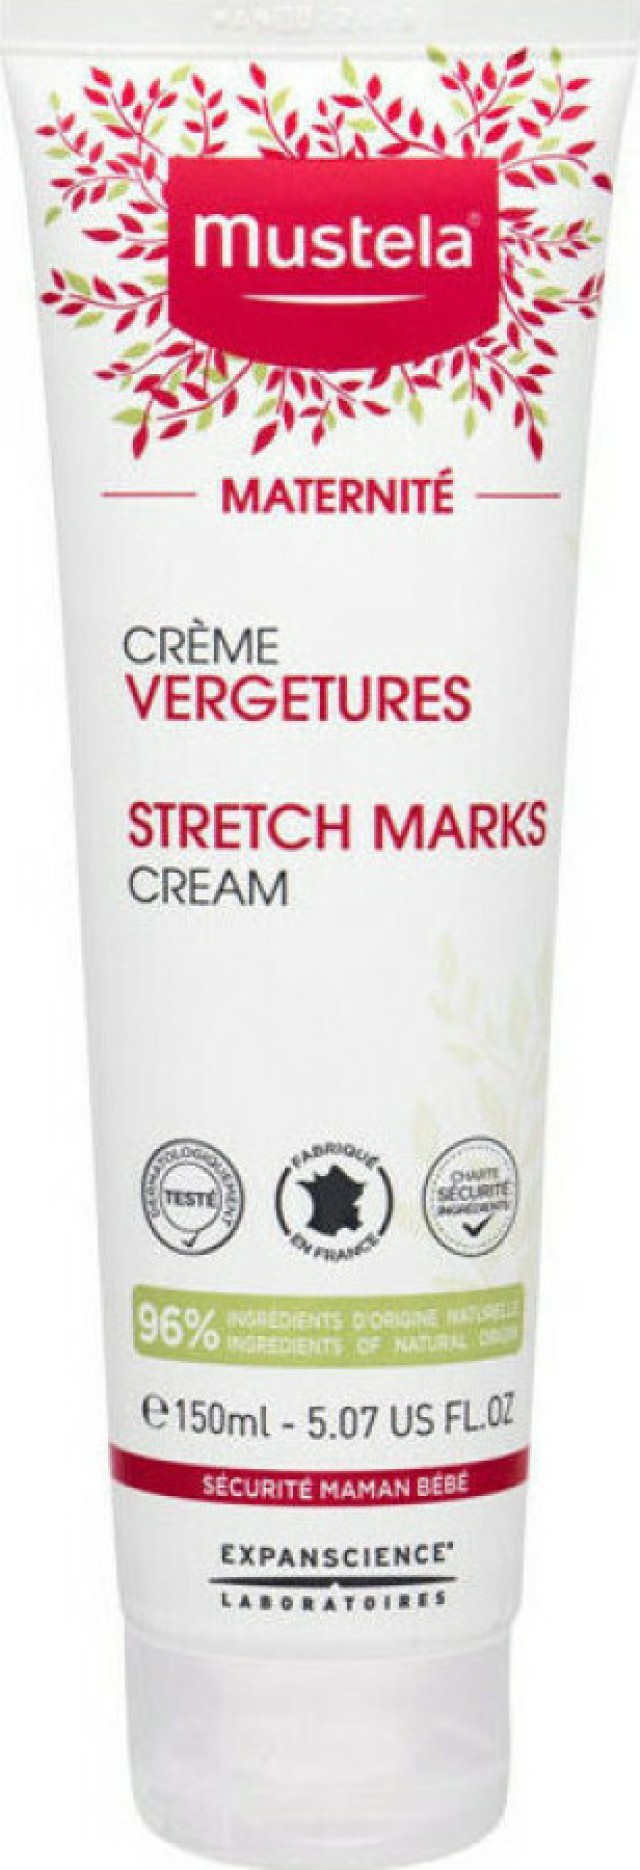 Mustela Maternite Stretch Marks Cream 3 In 1, Κρέμα Κρέμα Πρόληψης & Αντιμετώπισης Ραγάδων, κατάλληλη χρήση κατά την Διάρκεια της Εγκυμοσύνης & μετά τον Τοκετό, 150ml